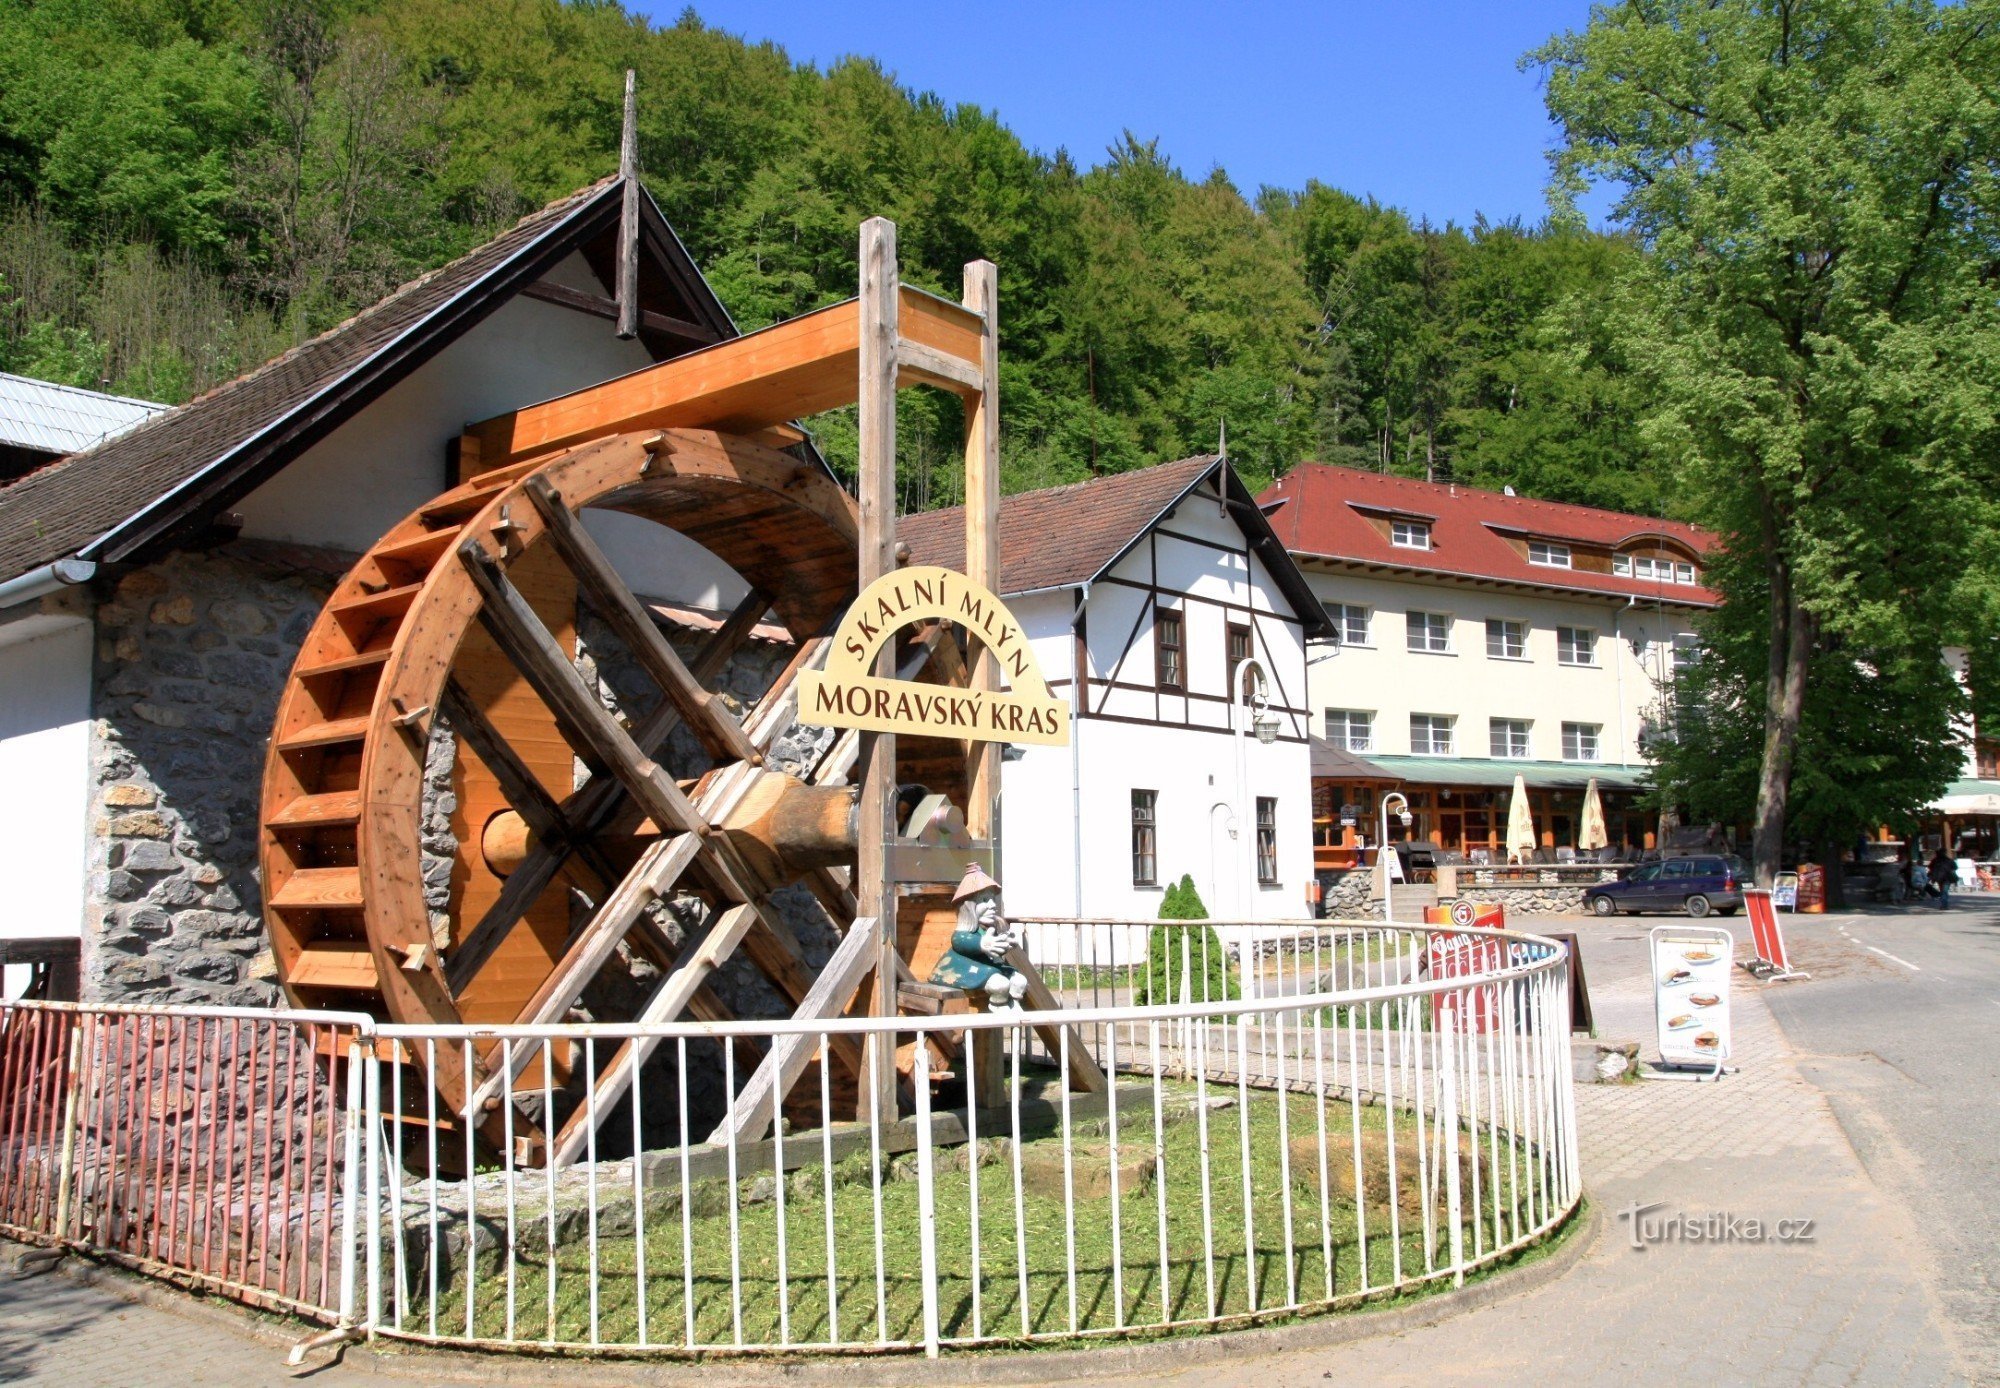 Skalní Mlýn - входная часть с мельничным колесом